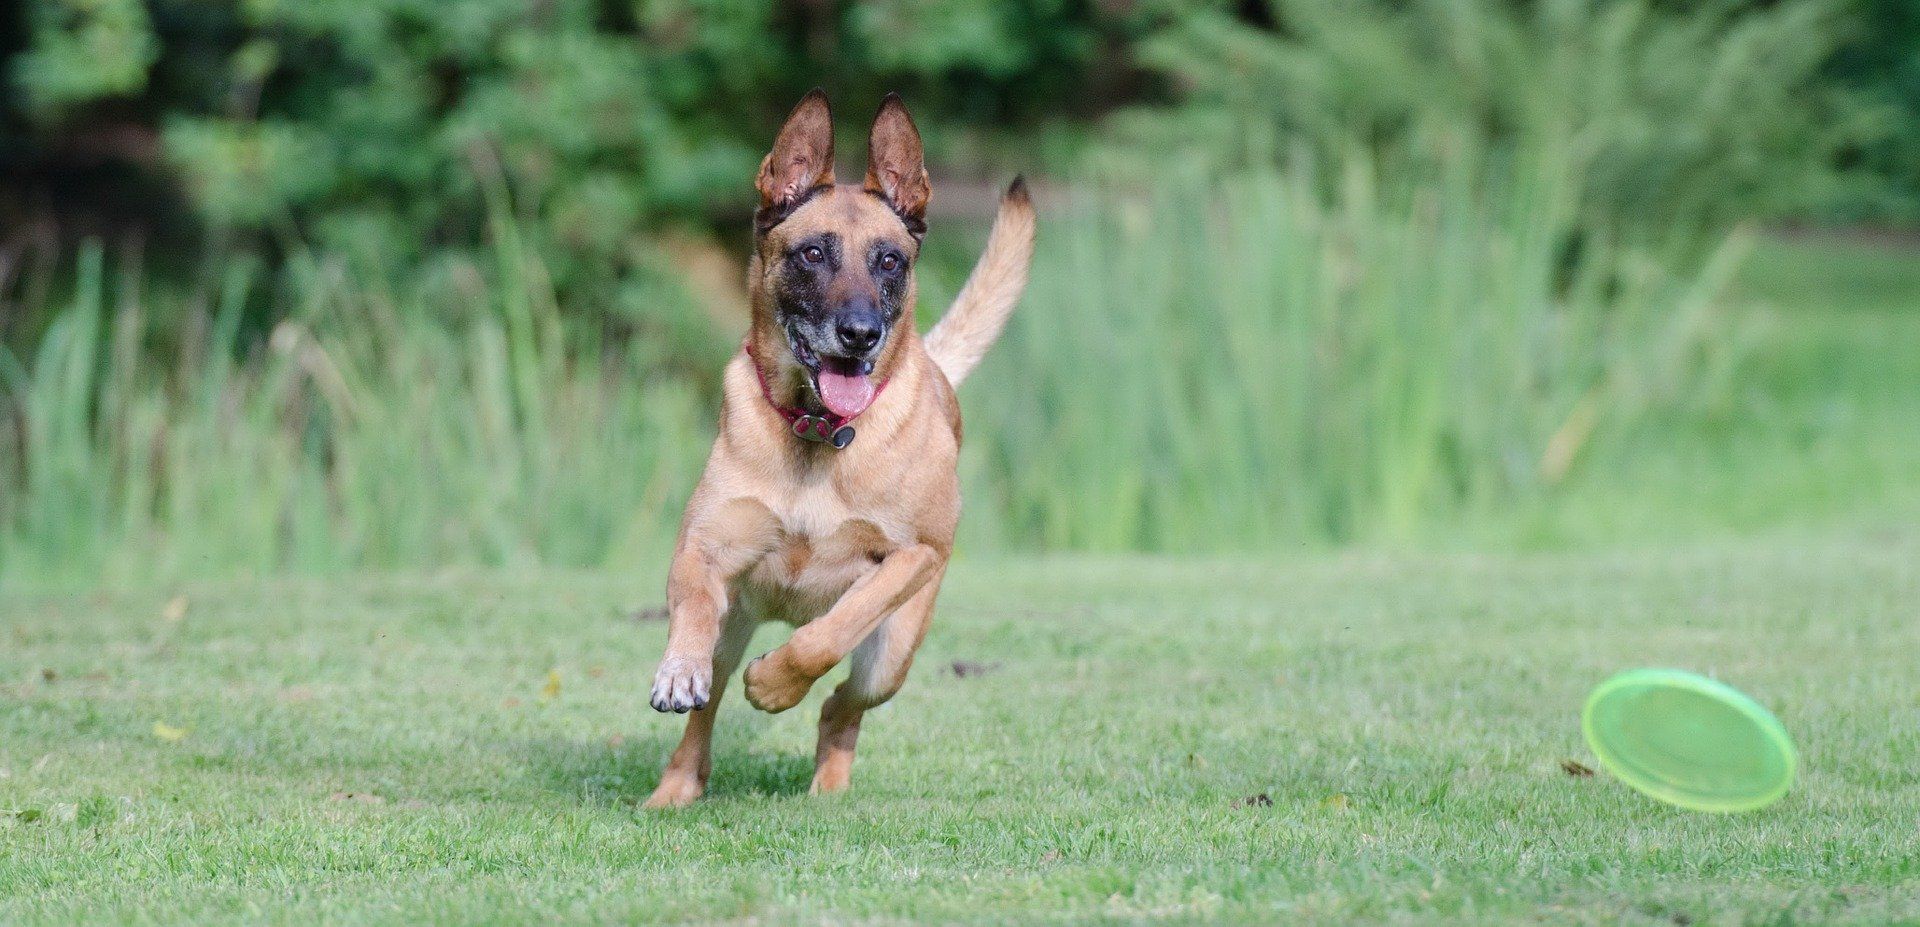 Ein Mallinoise auf einer Wiese rennt einem Hundespielzeug hinterher